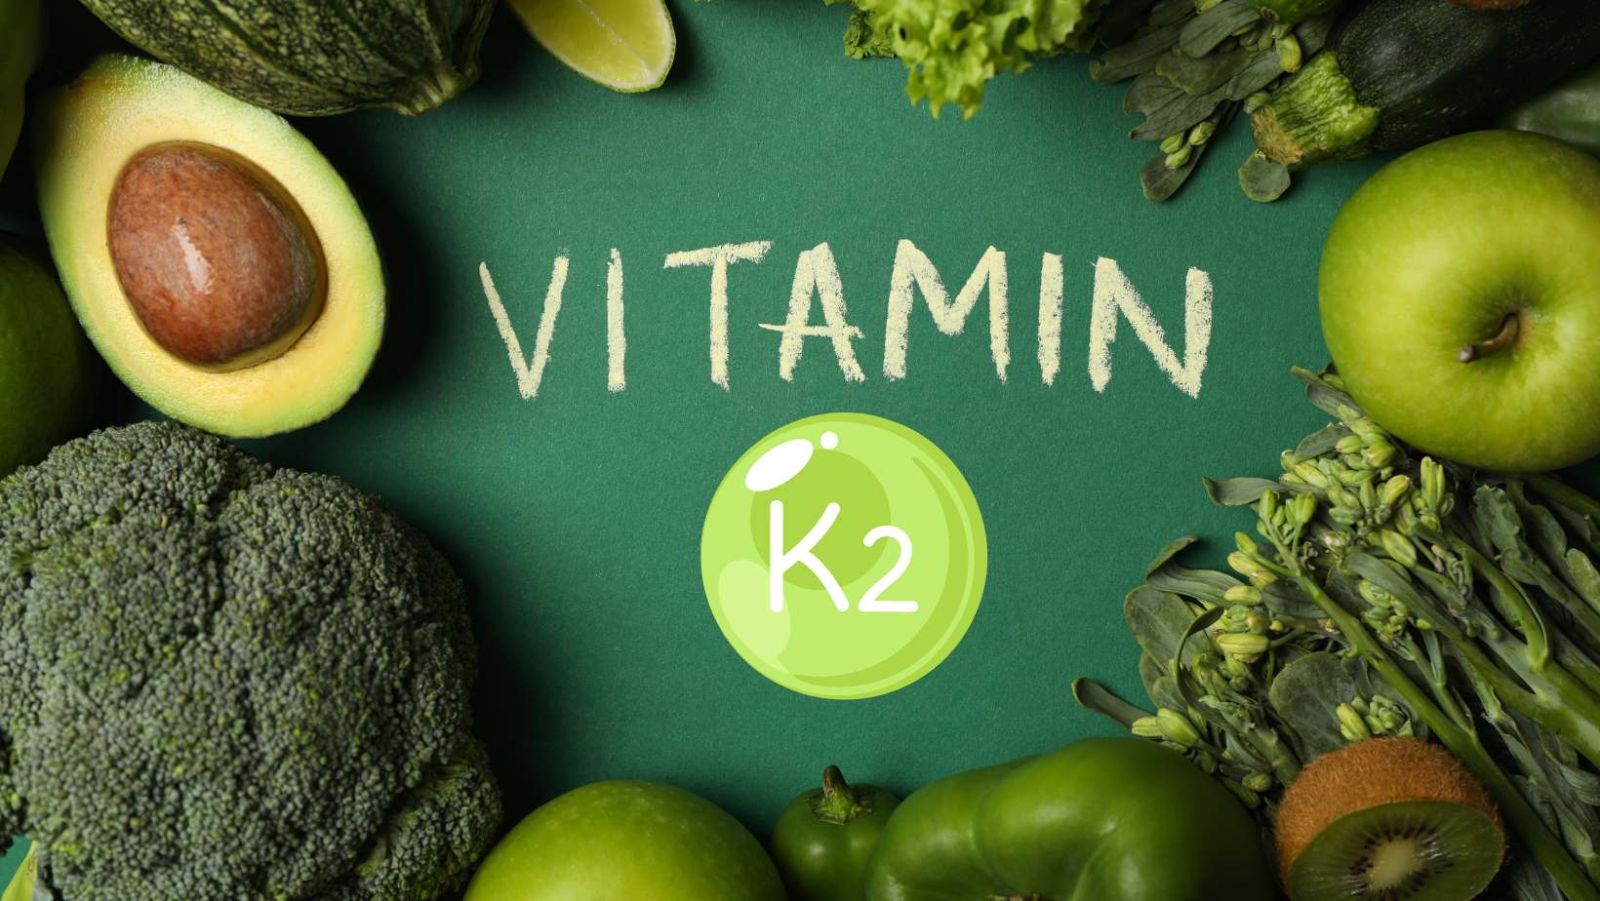 Vitamine K2 : un espoir contre la calcification cardiovasculaire liée à l'insuffisance rénale ?